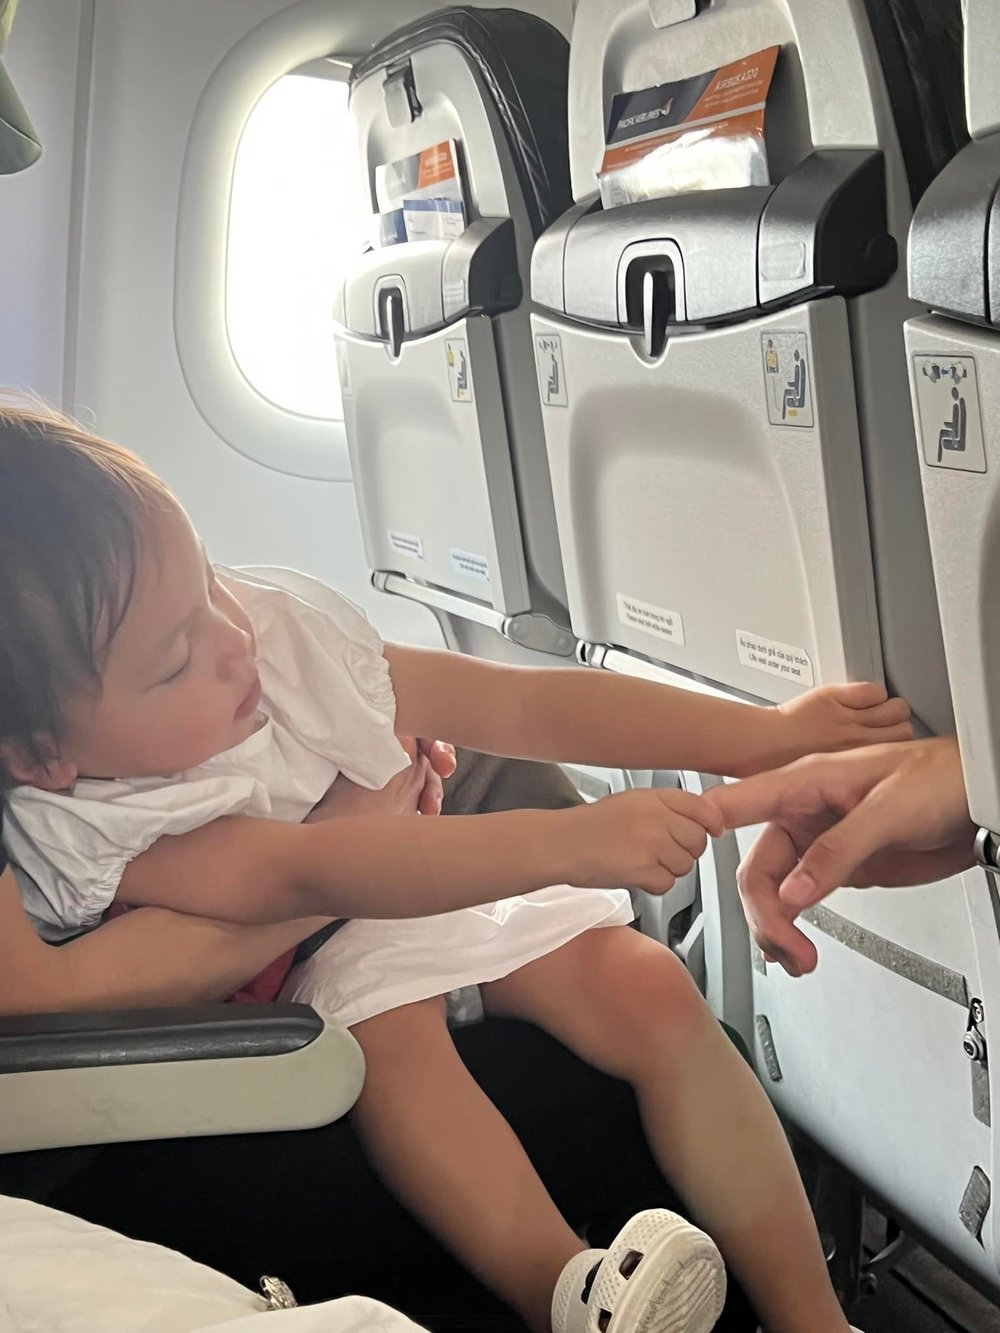  
Khoảnh khắc bé Lisa nắm lấy tay bố Kim khi ngồi máy bay. (Ảnh: FB Hồ Ngọc Hà) - Tin sao Viet - Tin tuc sao Viet - Scandal sao Viet - Tin tuc cua Sao - Tin cua Sao